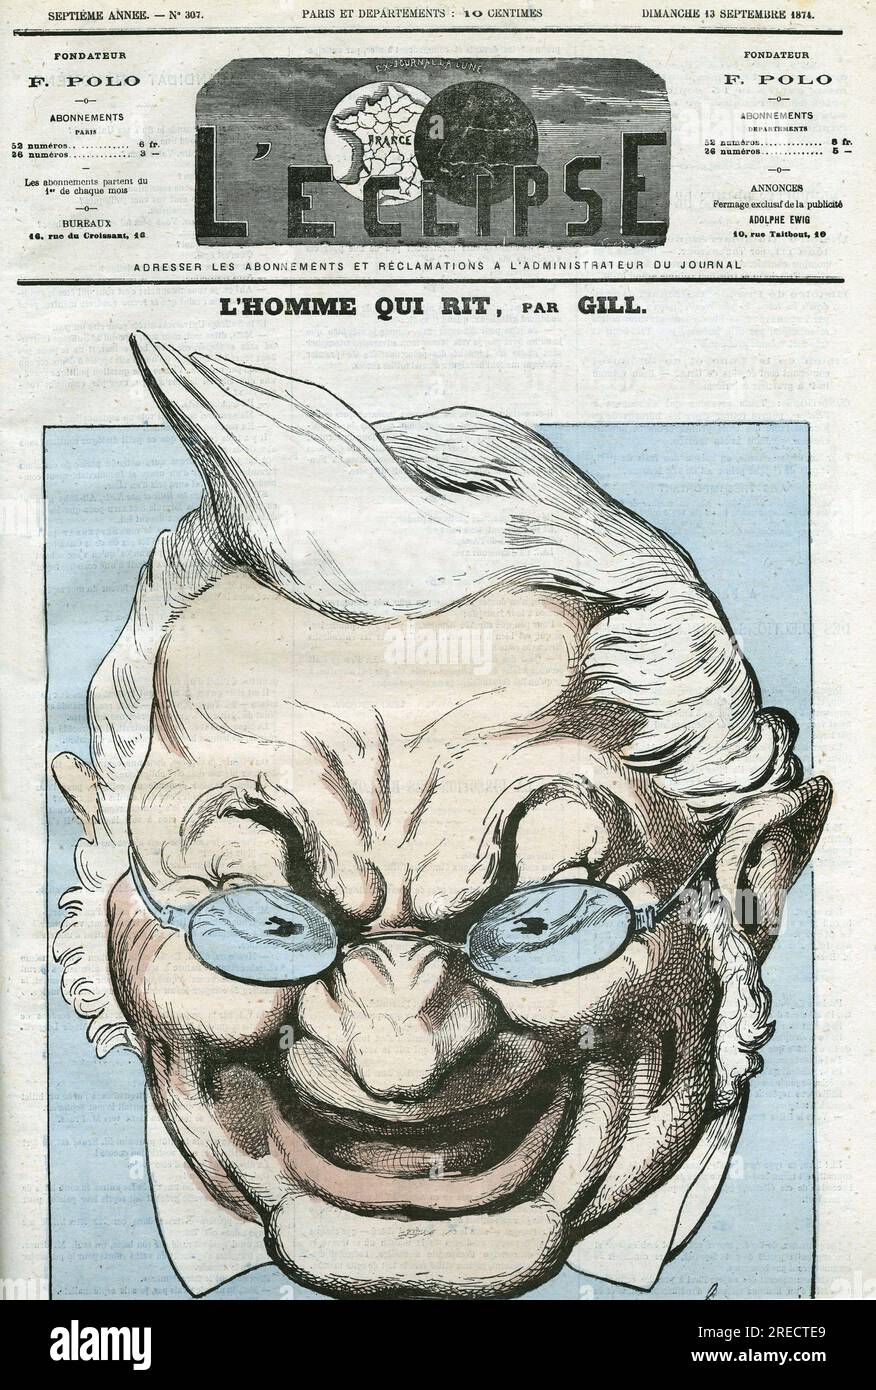 Caricature de 'l'homme qui ritt', Adolphe Thiers (1797-1877), homme politique français. Couverture in 'l'Eclipse' par Gill, le 13 septembre 1874, Paris. Banque D'Images